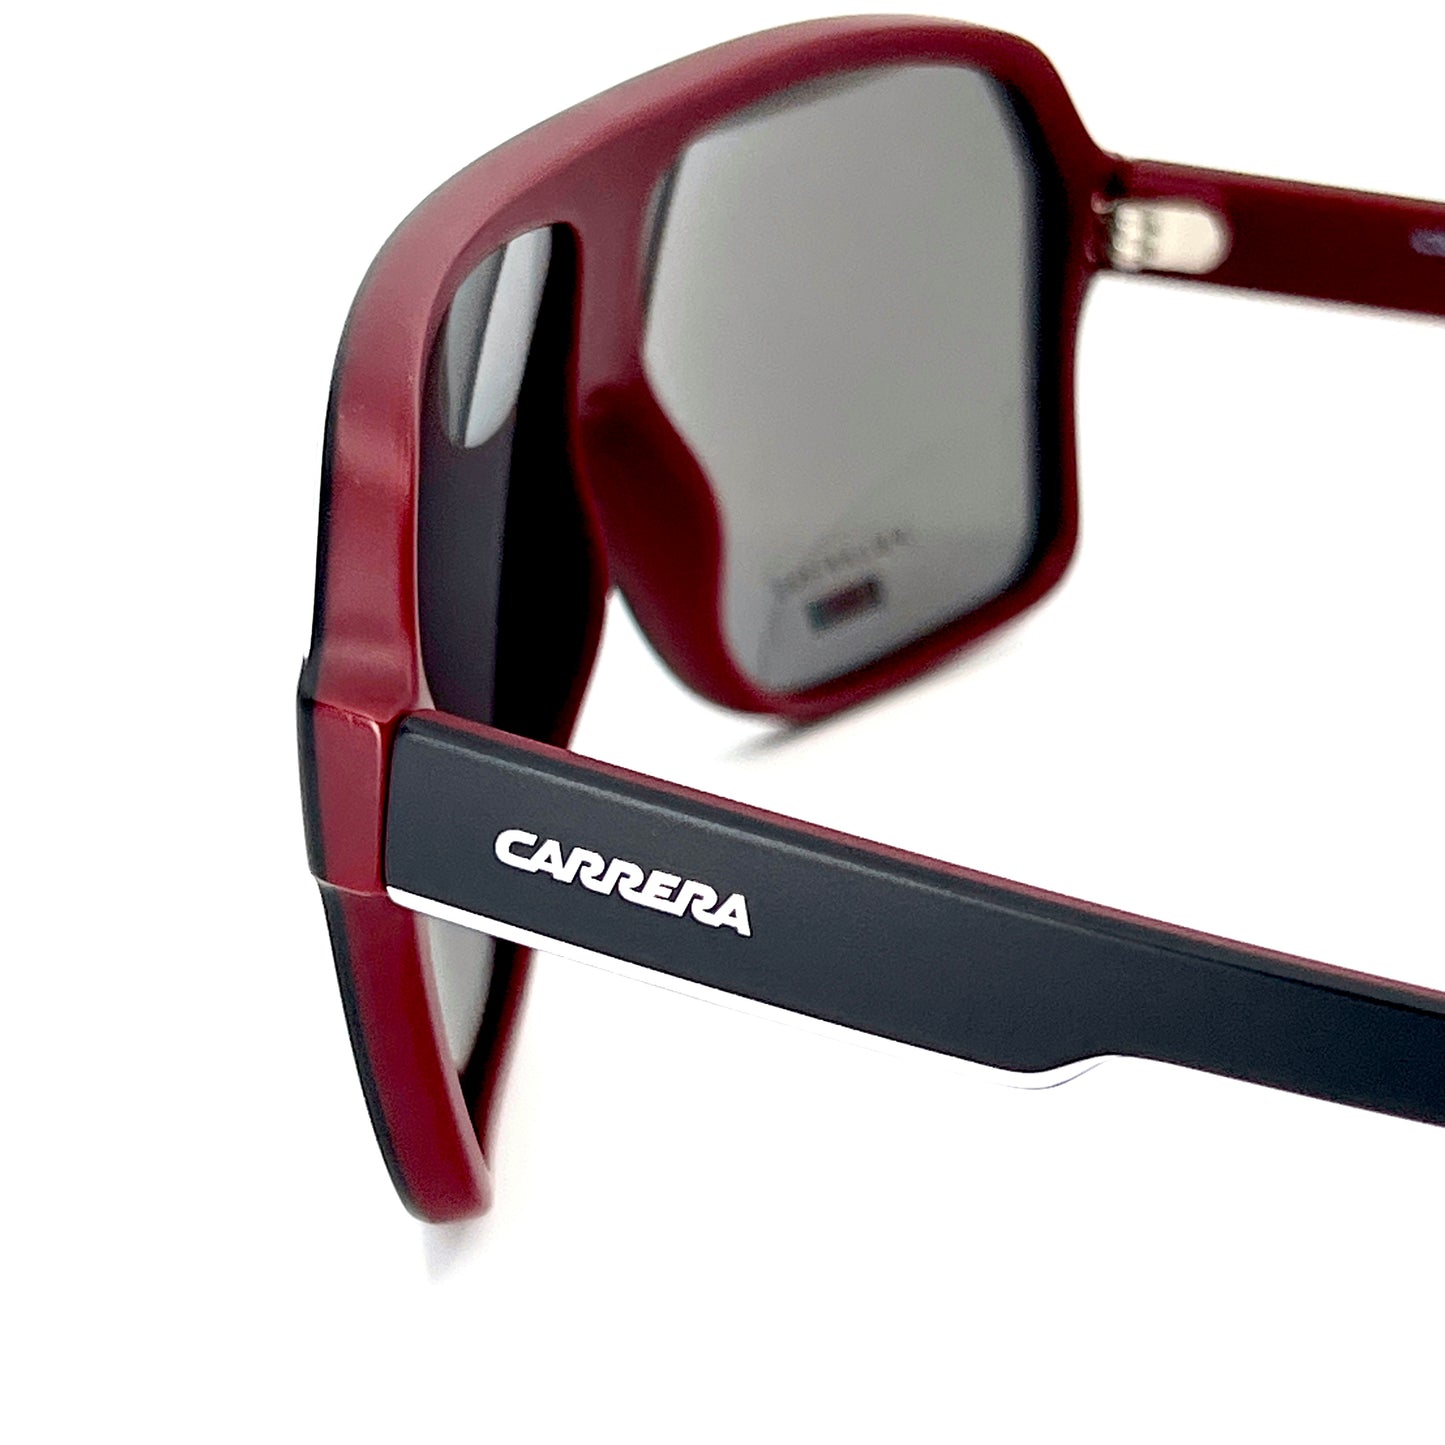 CARRERA Sunglasses 1001/S BLXM9